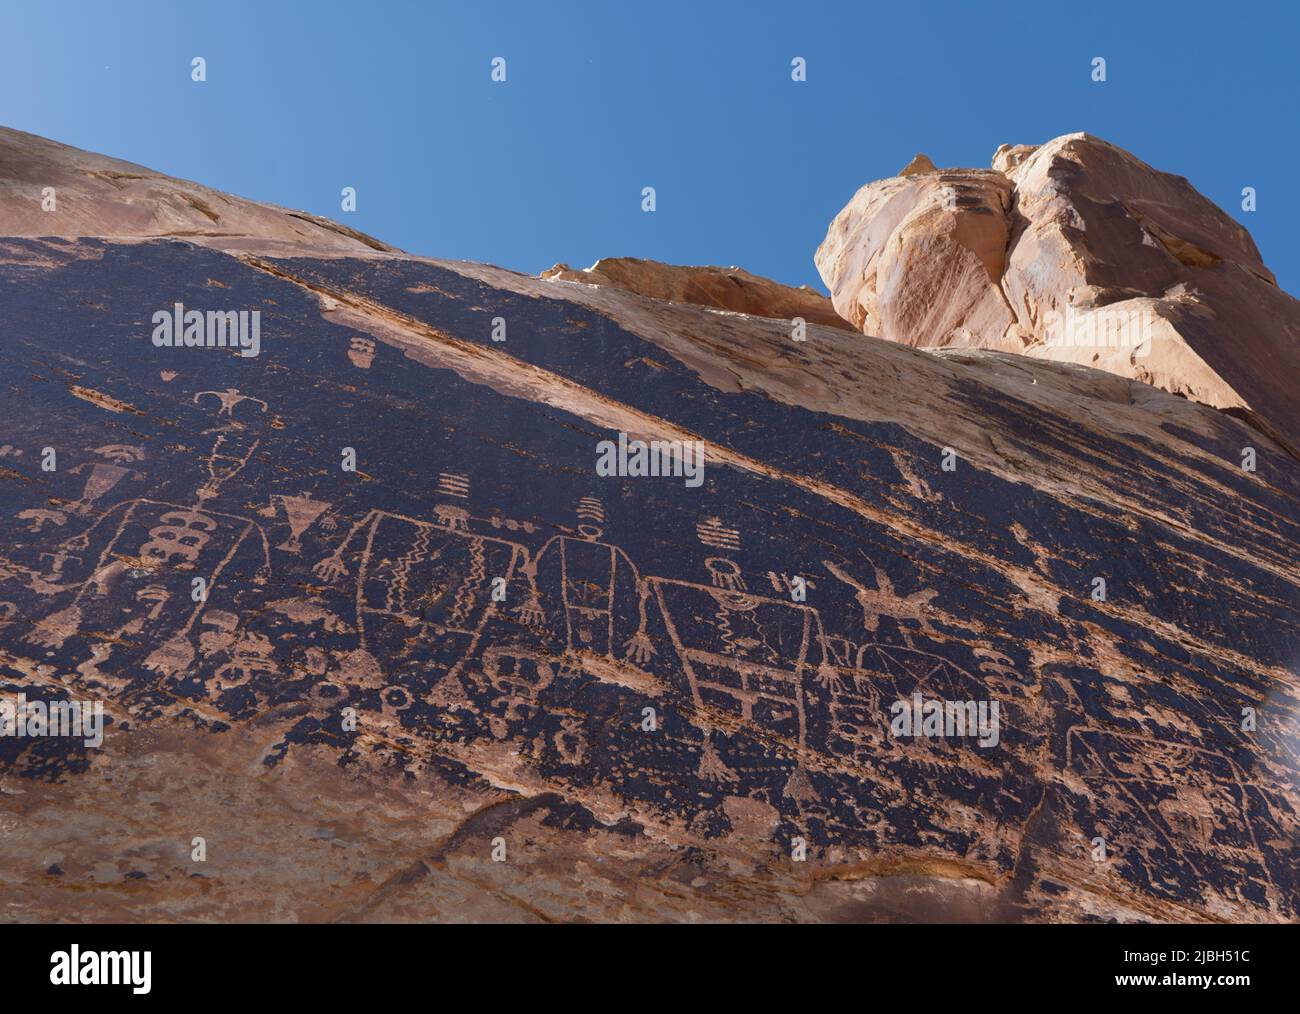 Des pétroglyphes américains indigènes ont été gravés dans les parois abruptes du canyon le long de la rivière San Juan dans le sud de l'Utah. Banque D'Images